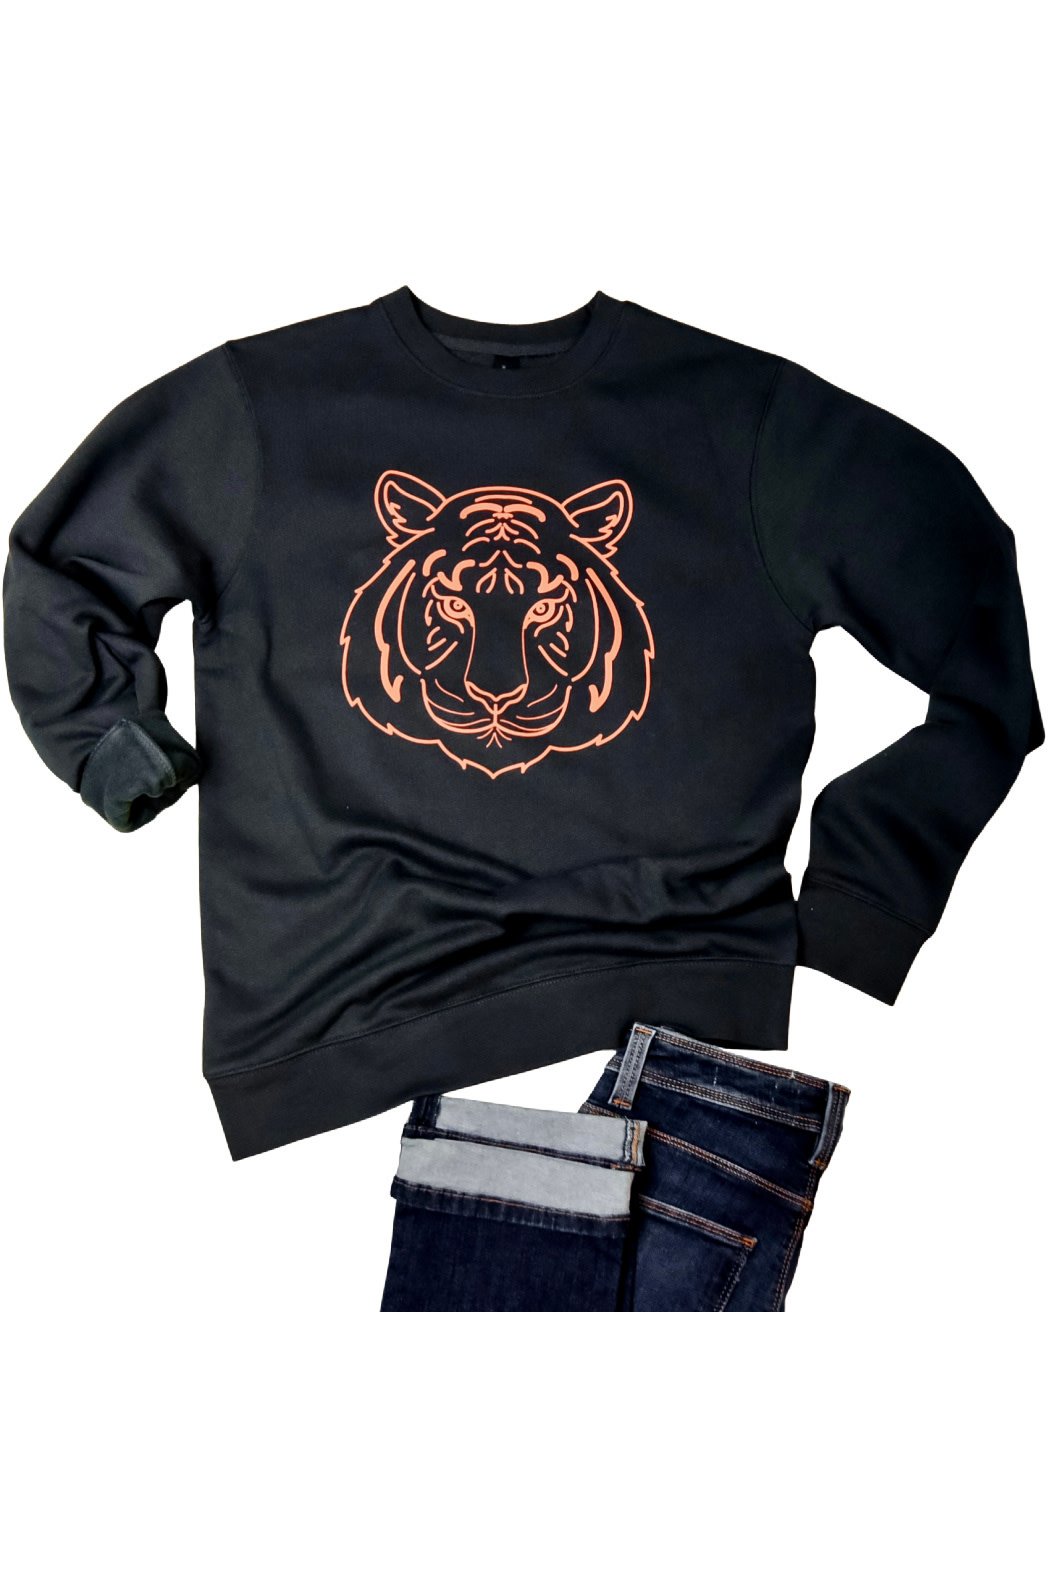 Lauren Lane Tiger Sweatshirt